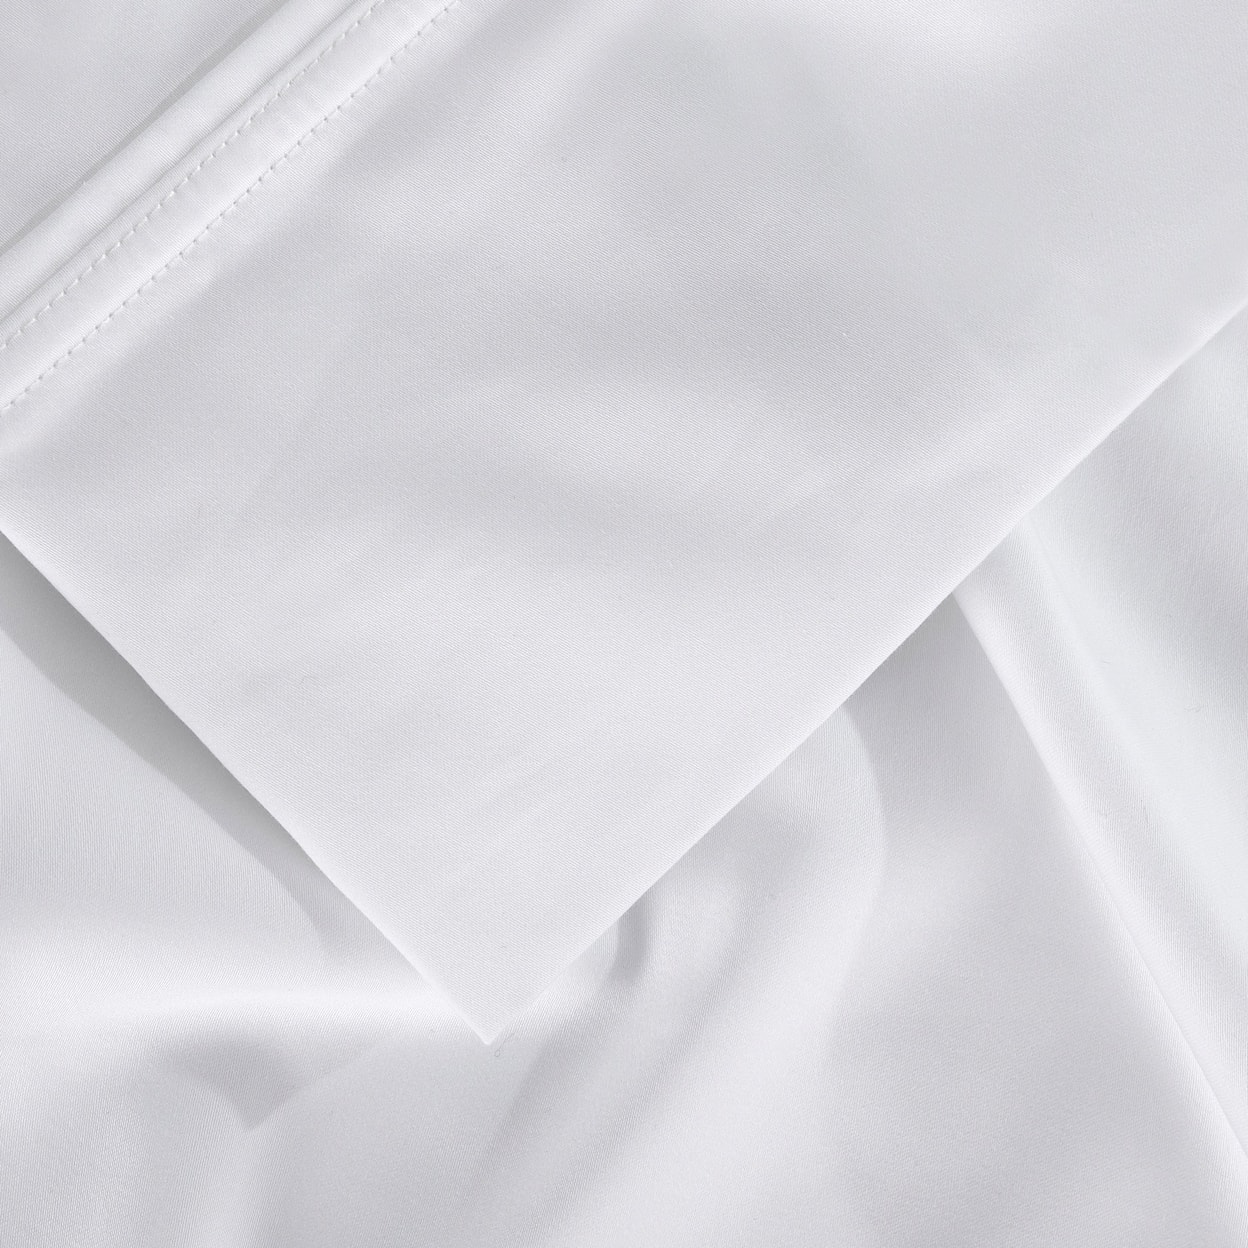 Bedgear Hyper Cotton Sheets Sheet Set,White, Full